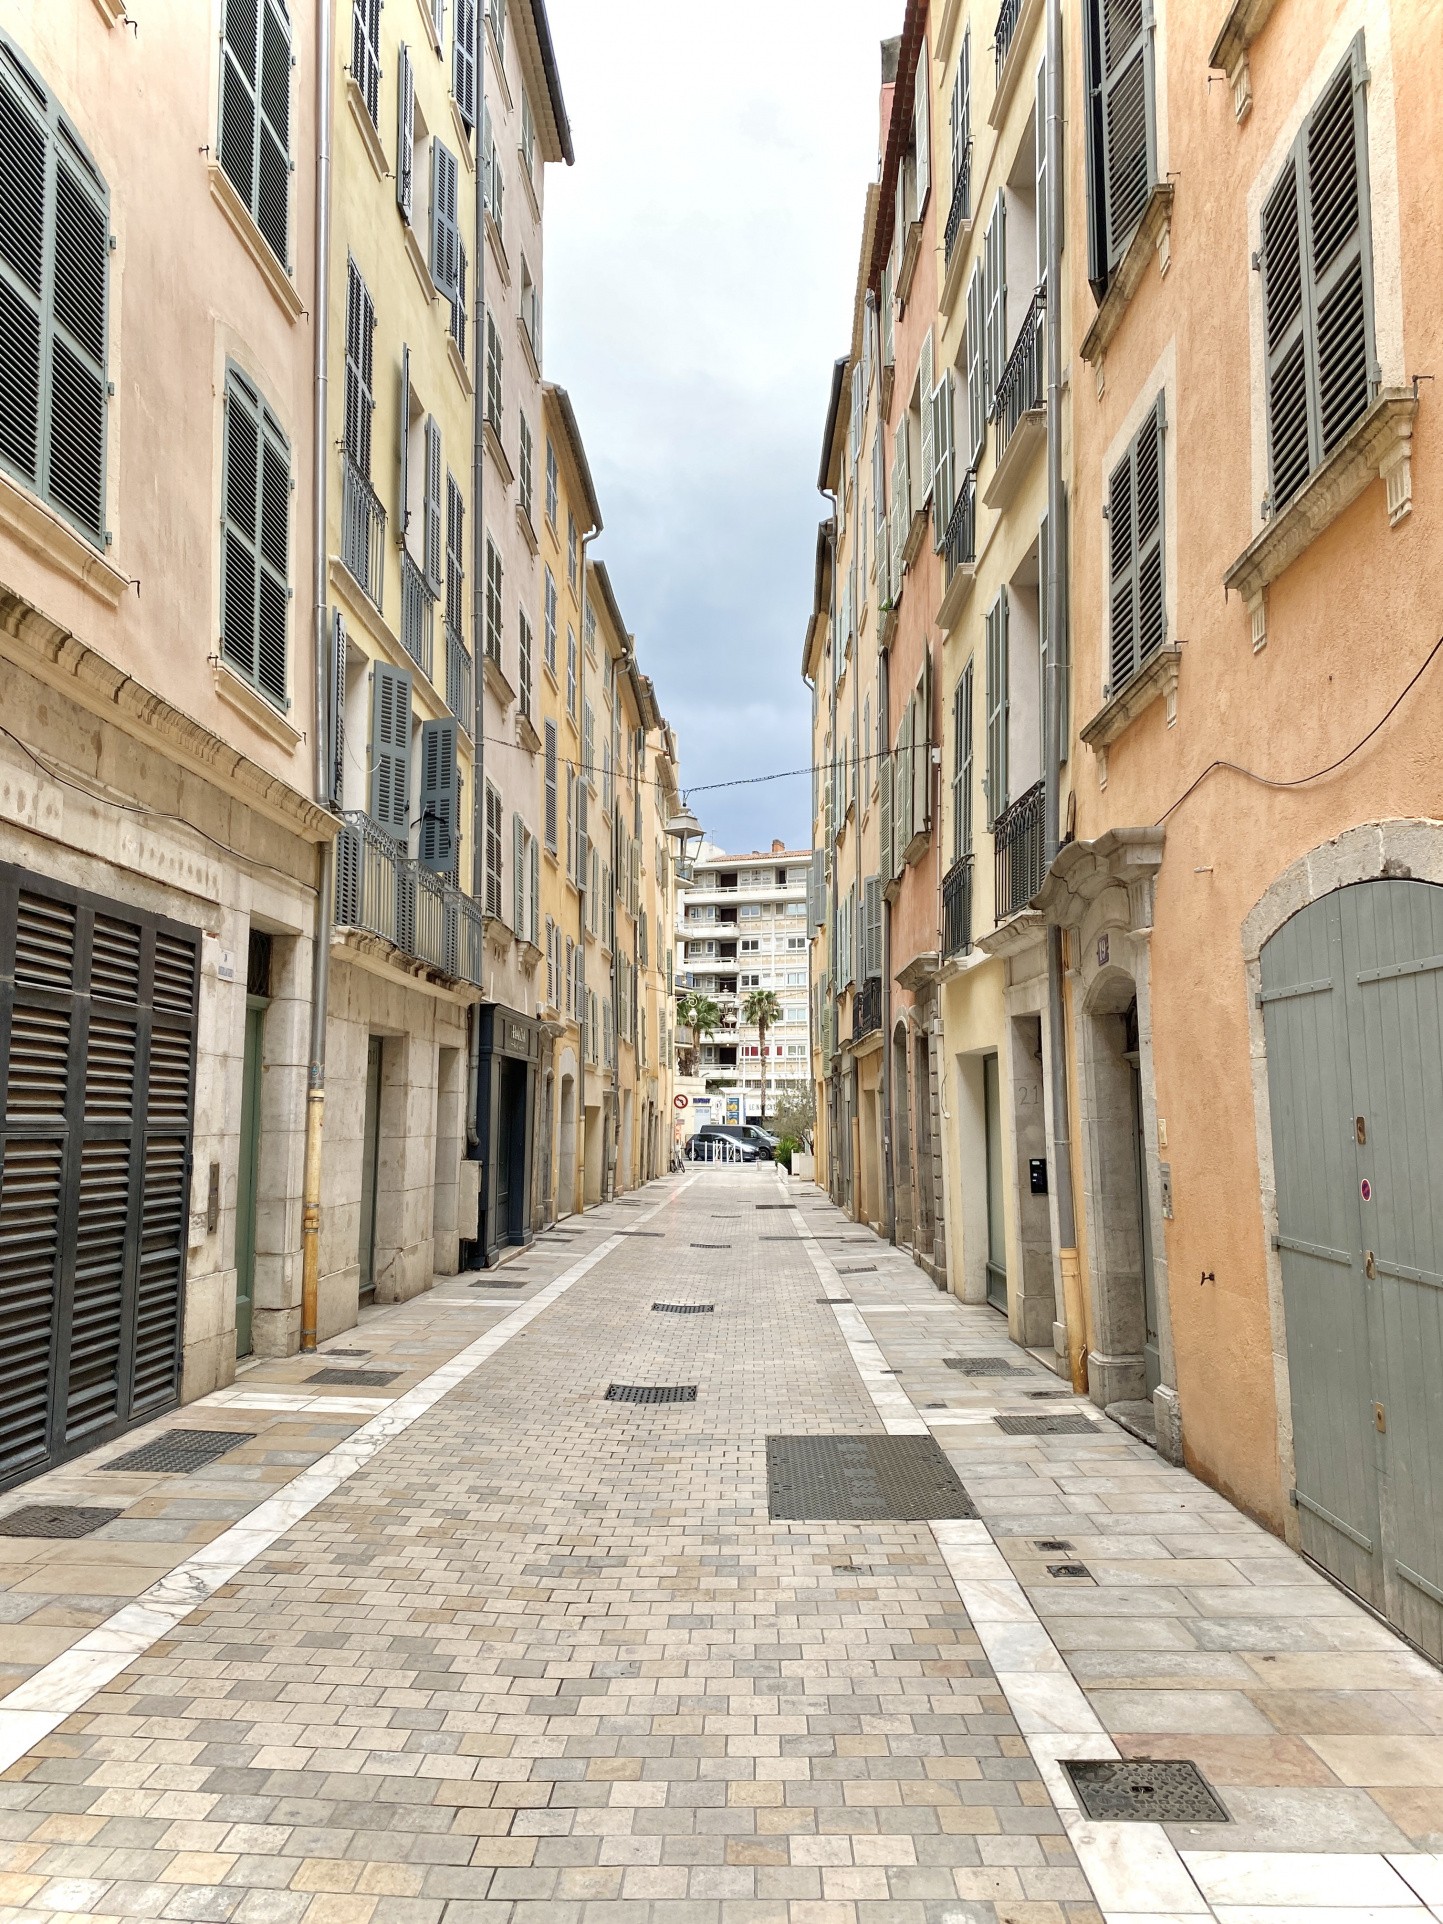 Location Bureau / Commerce à Toulon 2 pièces